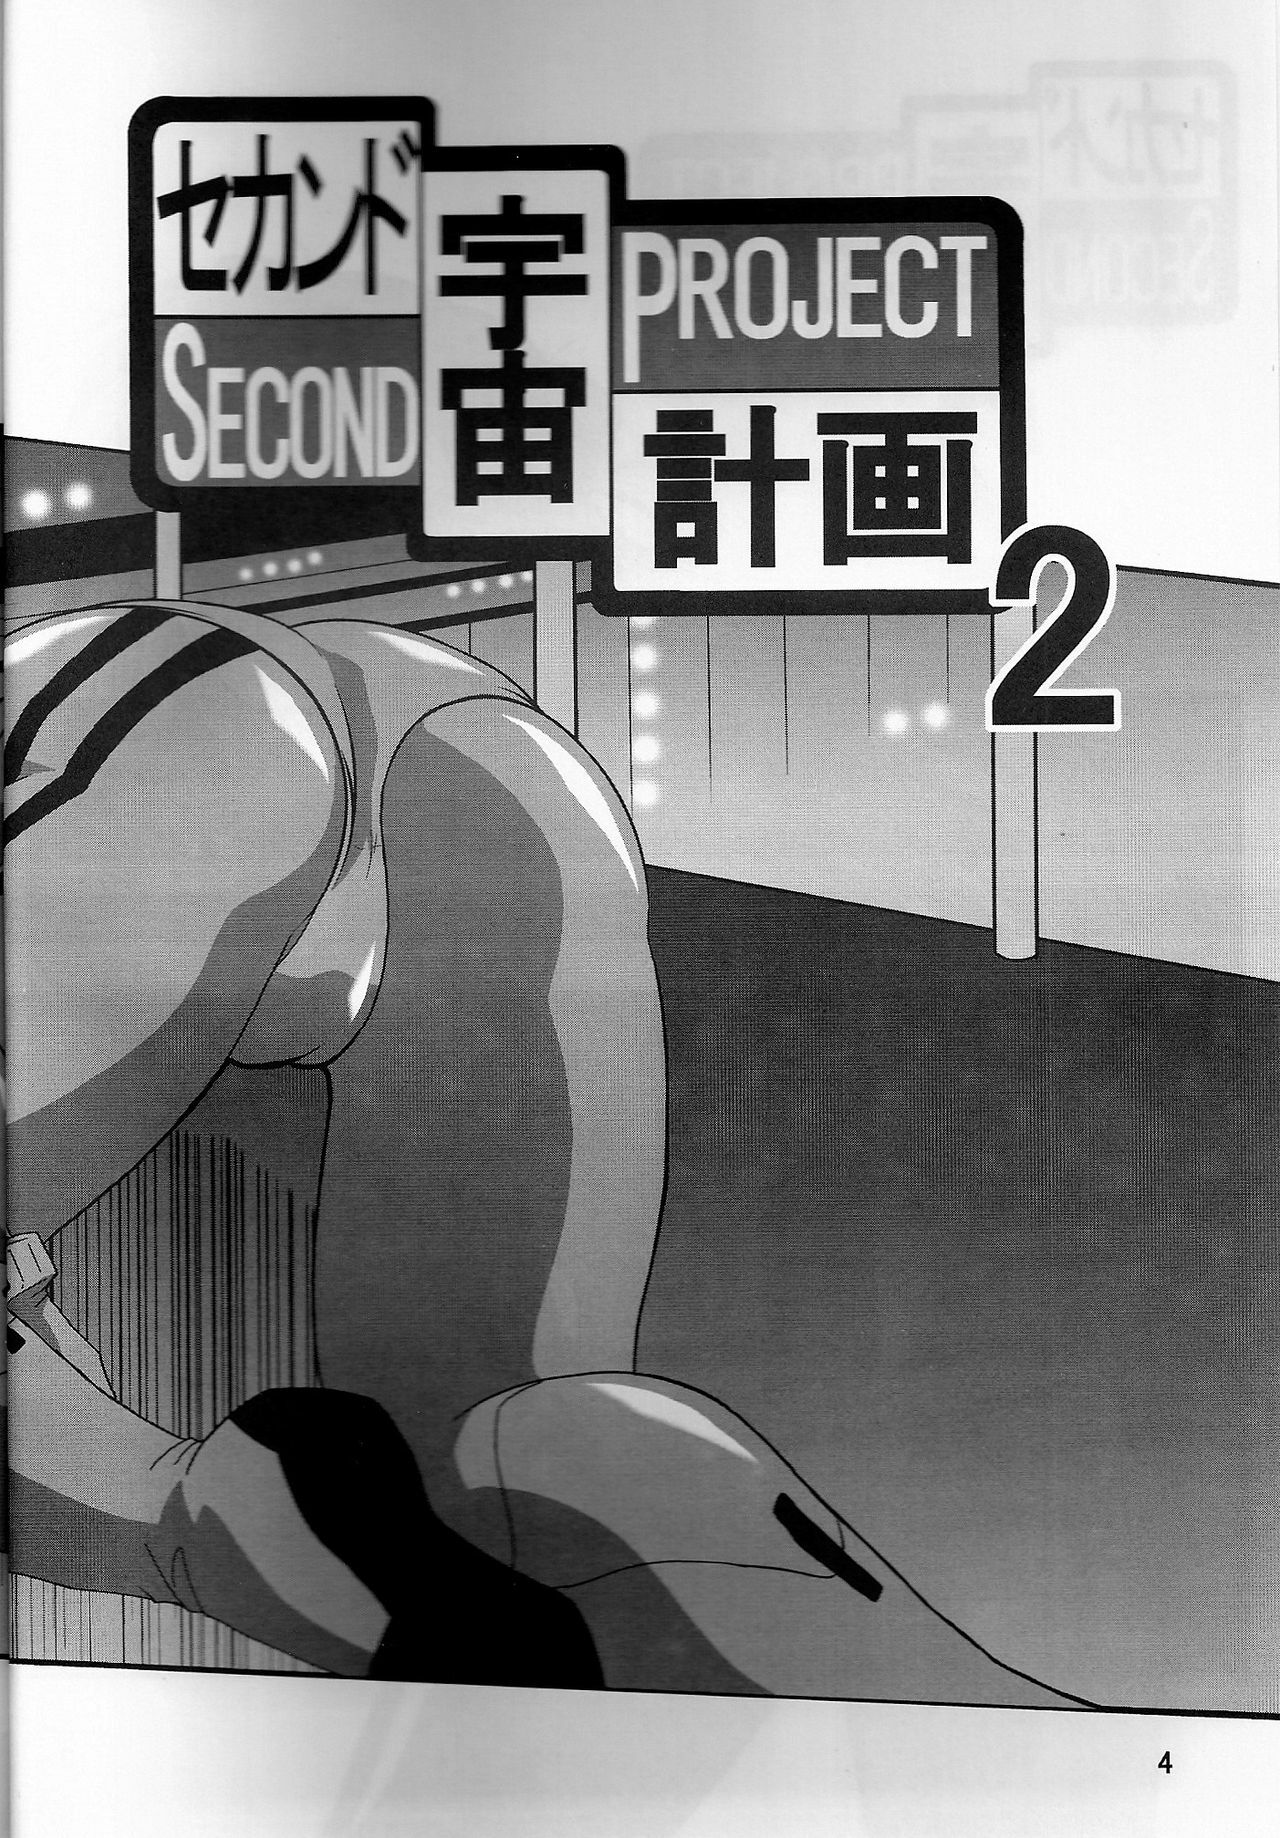 (COMIC1) [Thirty Saver Street 2D Shooting (Maki Hideto, Sawara Kazumitsu, Yonige-ya No Kyou)] Second Uchuu Keikaku 2 (Neon Genesis Evangelion) page 4 full